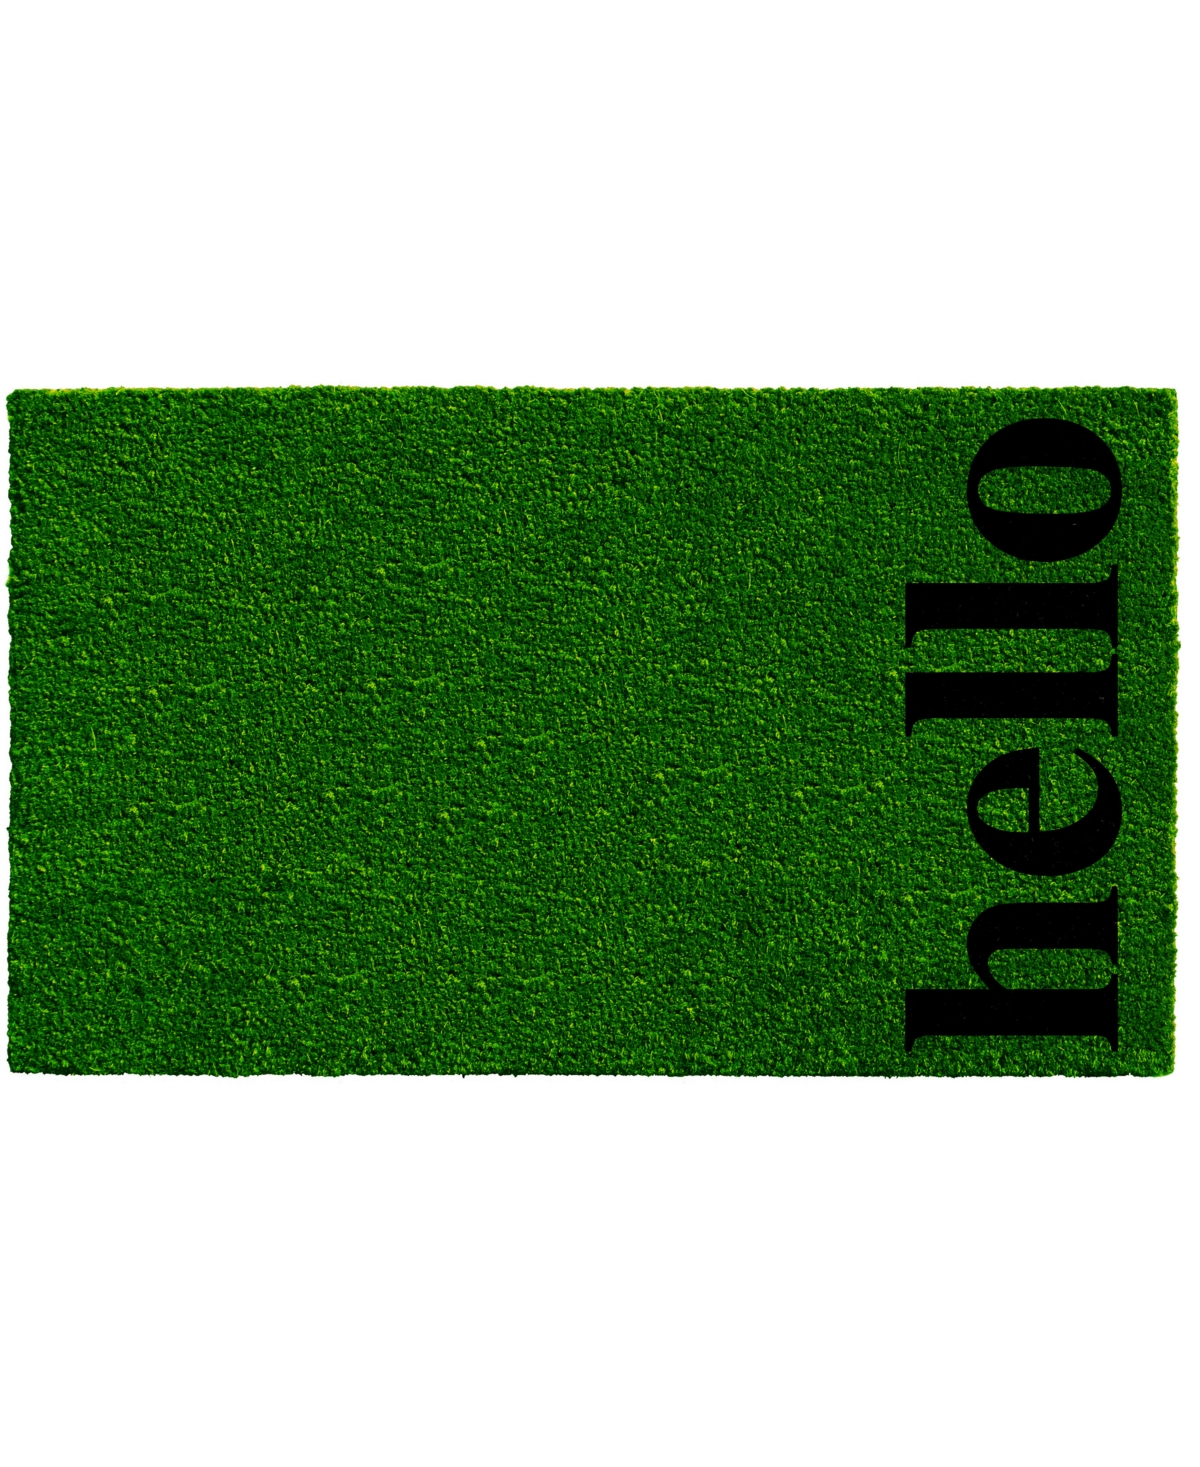 Home & More Vertical Hello Coir/vinyl Doormat, 17" X 29" In Green,black